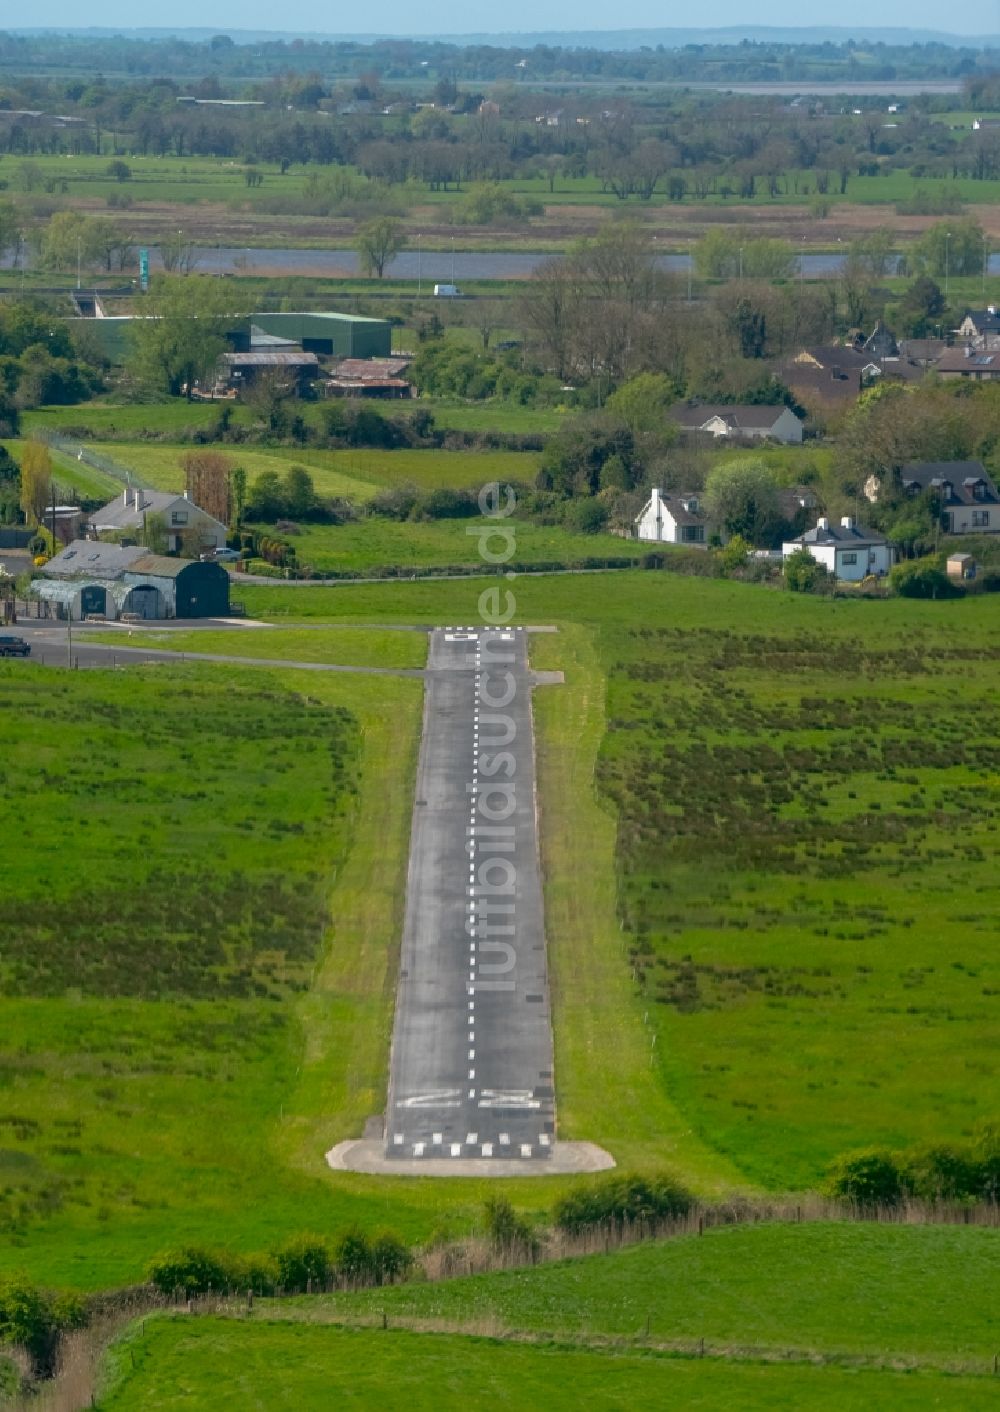 Luftbild Limerick - Flugplatz des Coonagh-Airfield in Limerick, Irland